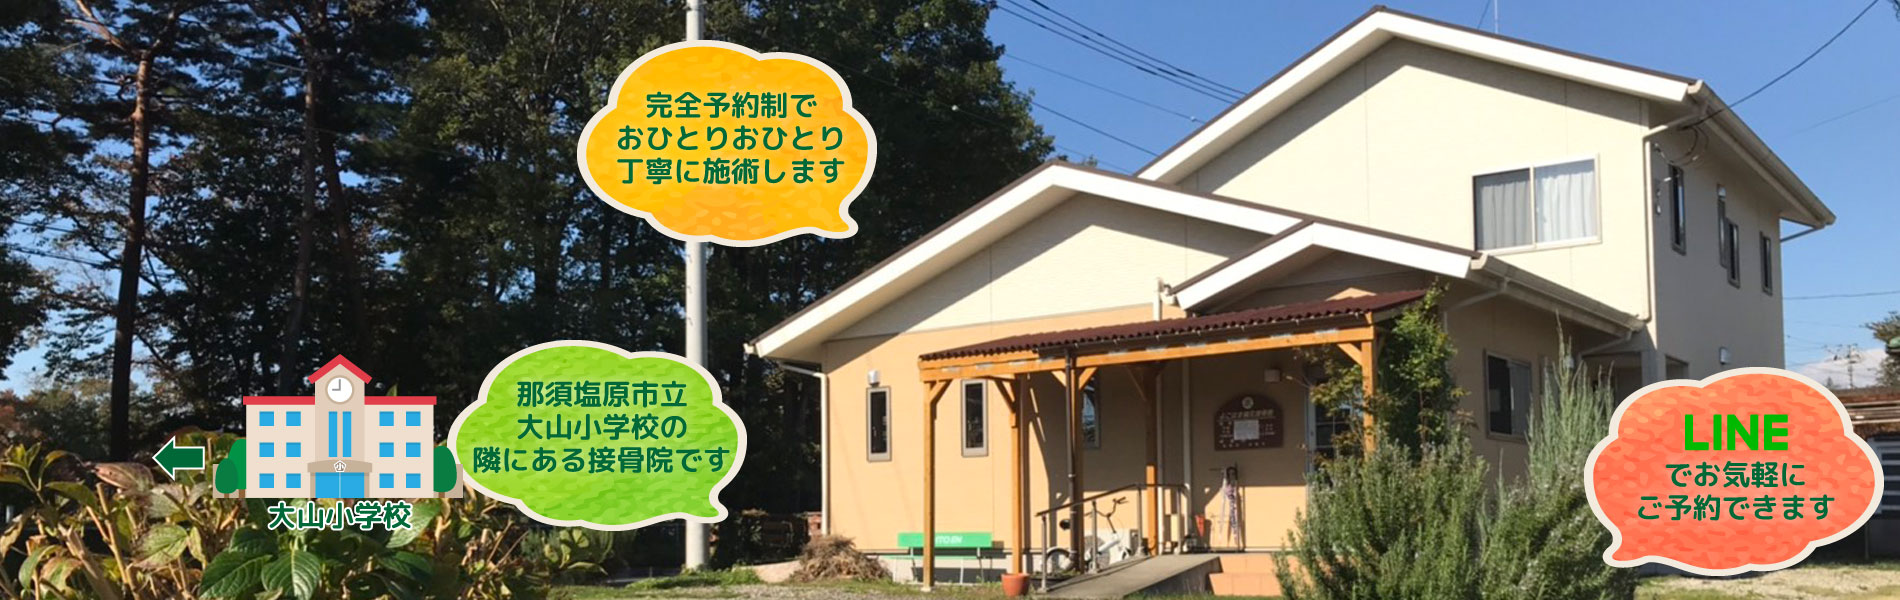 栃木県那須塩原市下永田、よこはま鍼灸接骨院。那須塩原市立大山小学校の隣にある接骨院です。